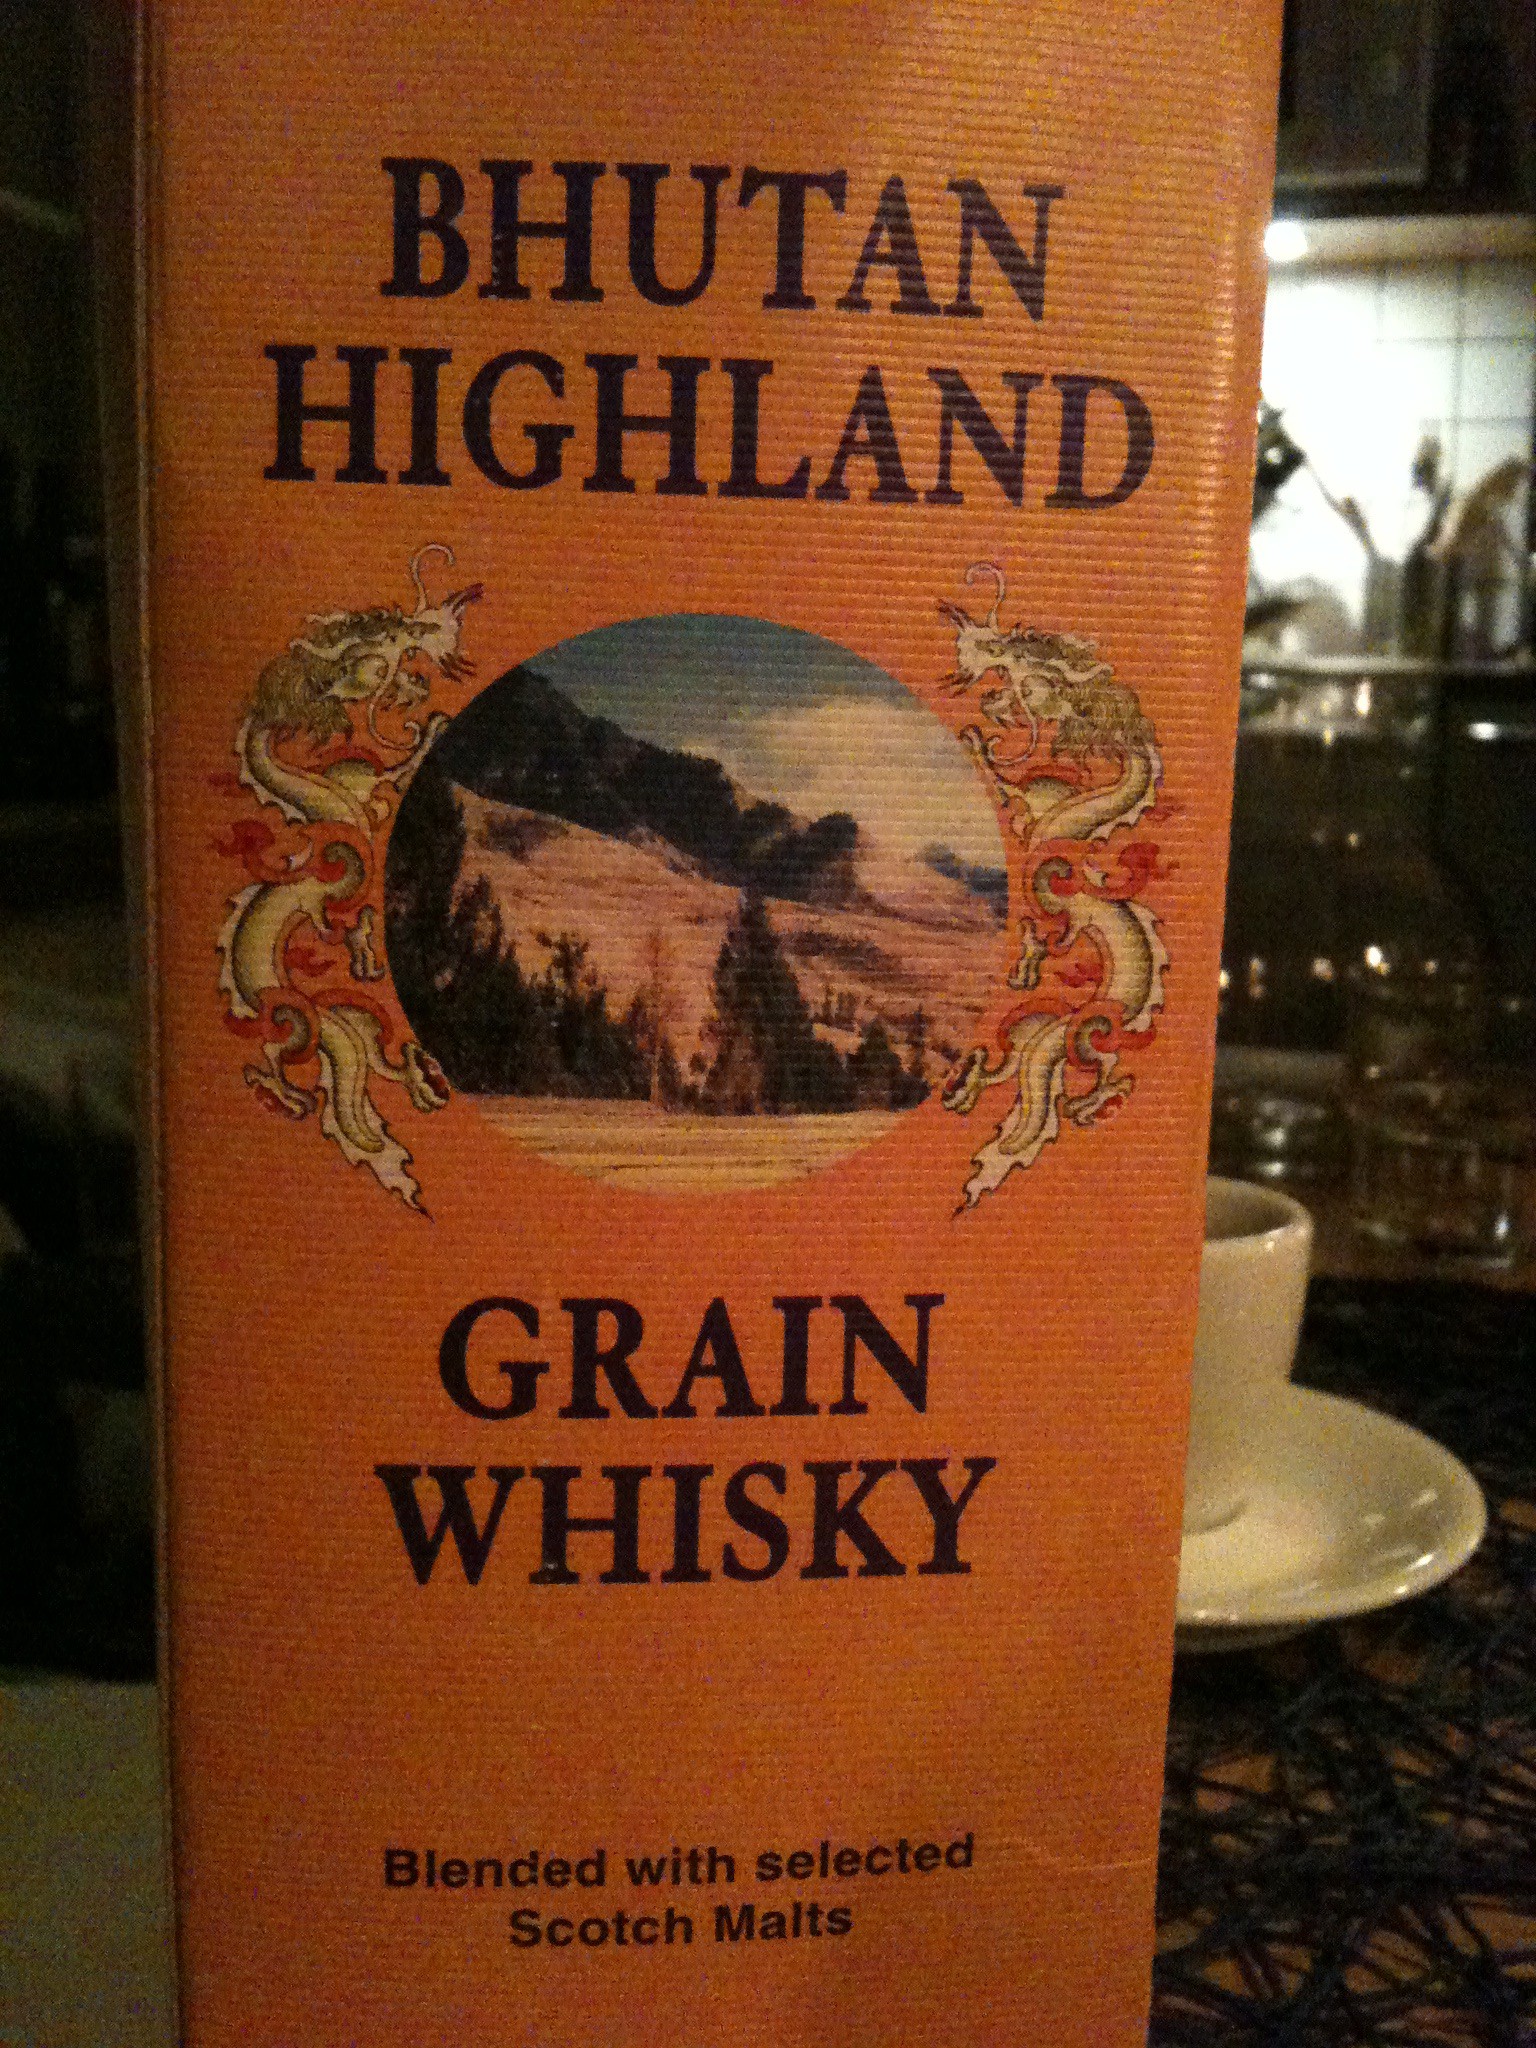 Bhutan Highland Grain Whisky